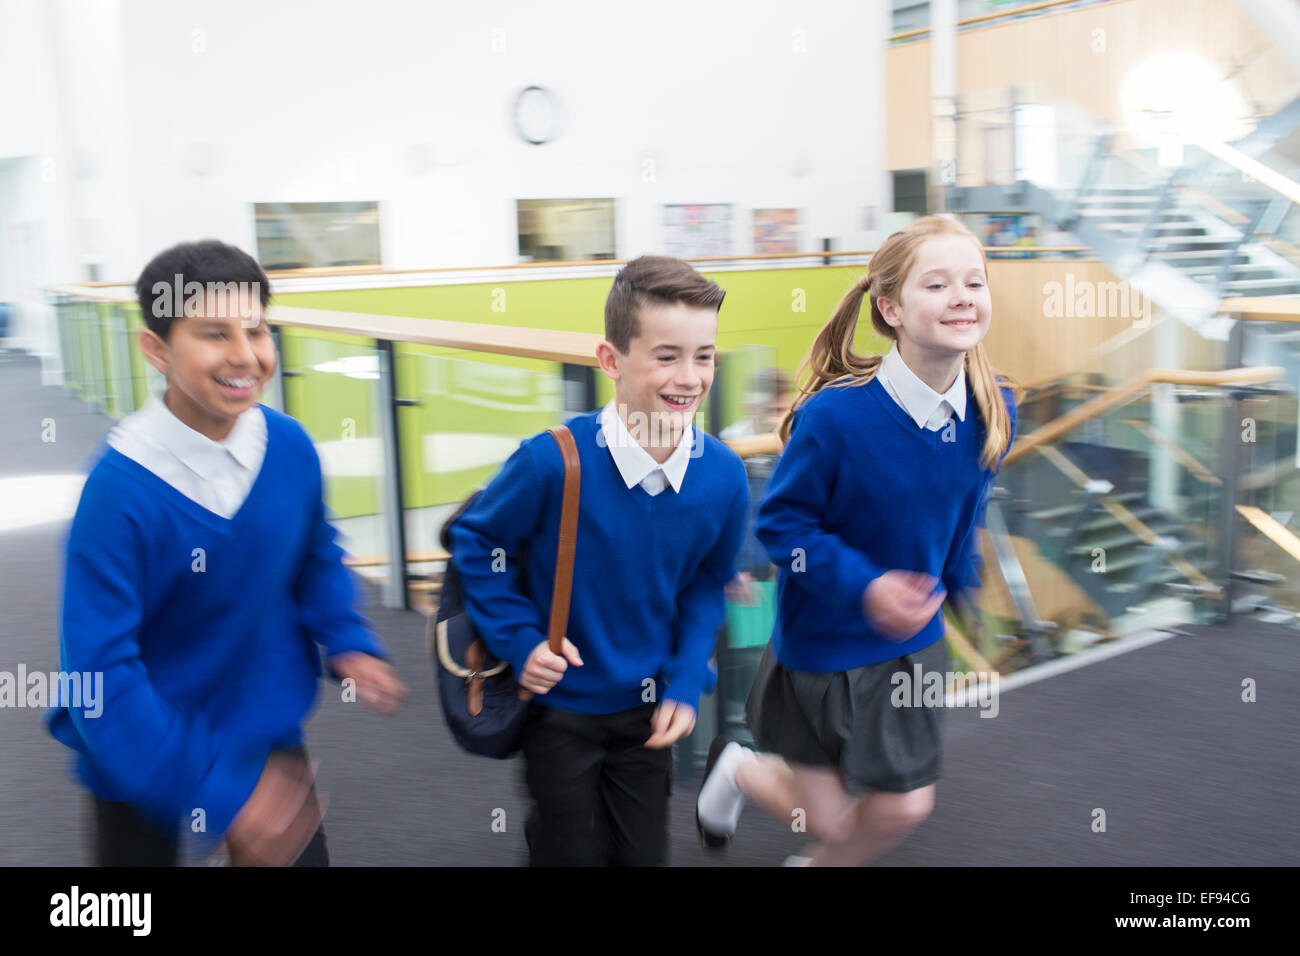 Glückliche Schüler Schule Uniformen im Flur der Schule laufen Stockfoto